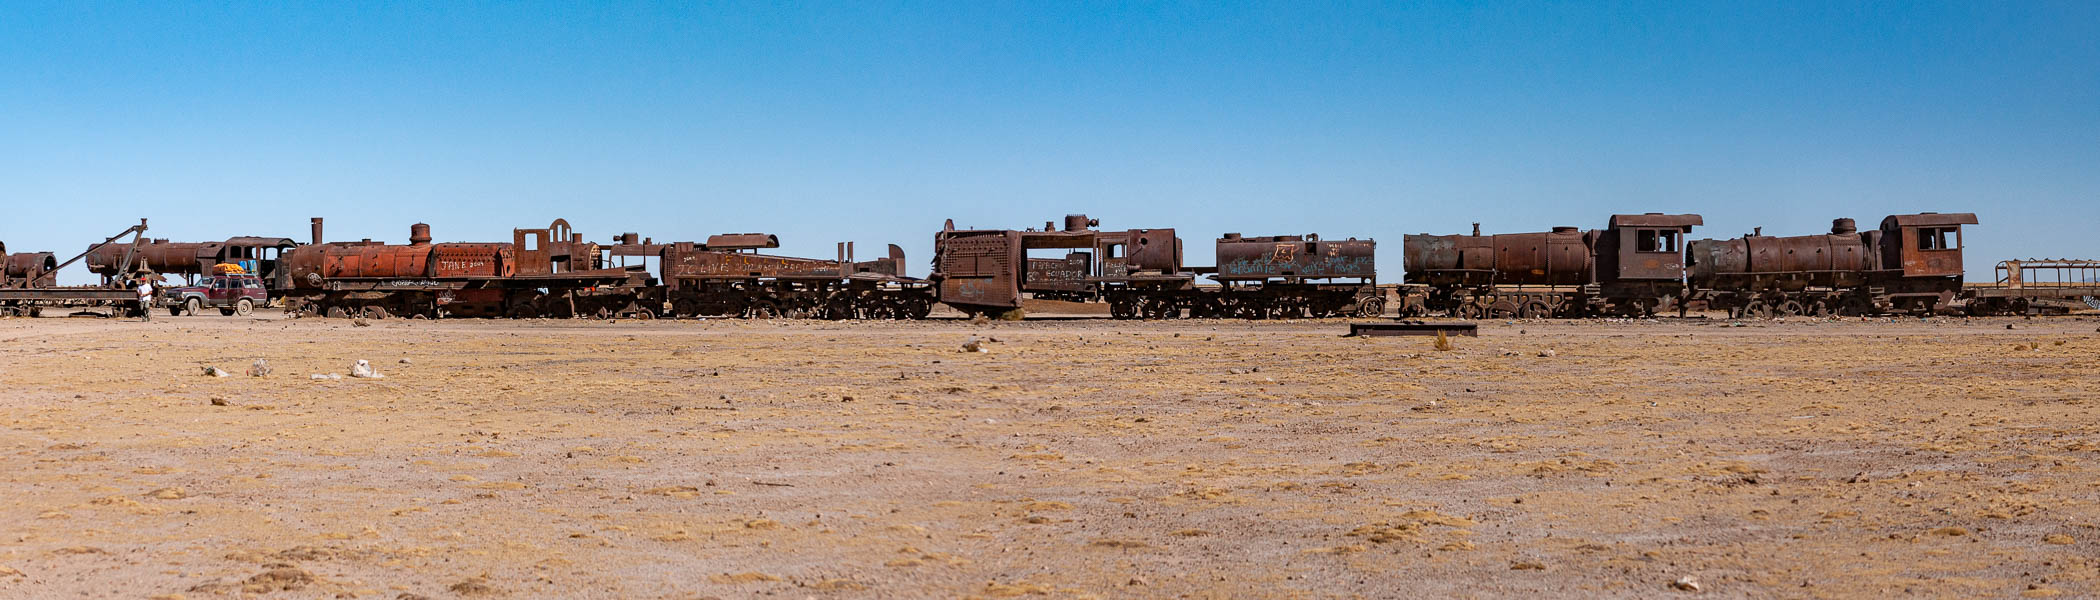 Cimetière de locomotives près d'Uyuni